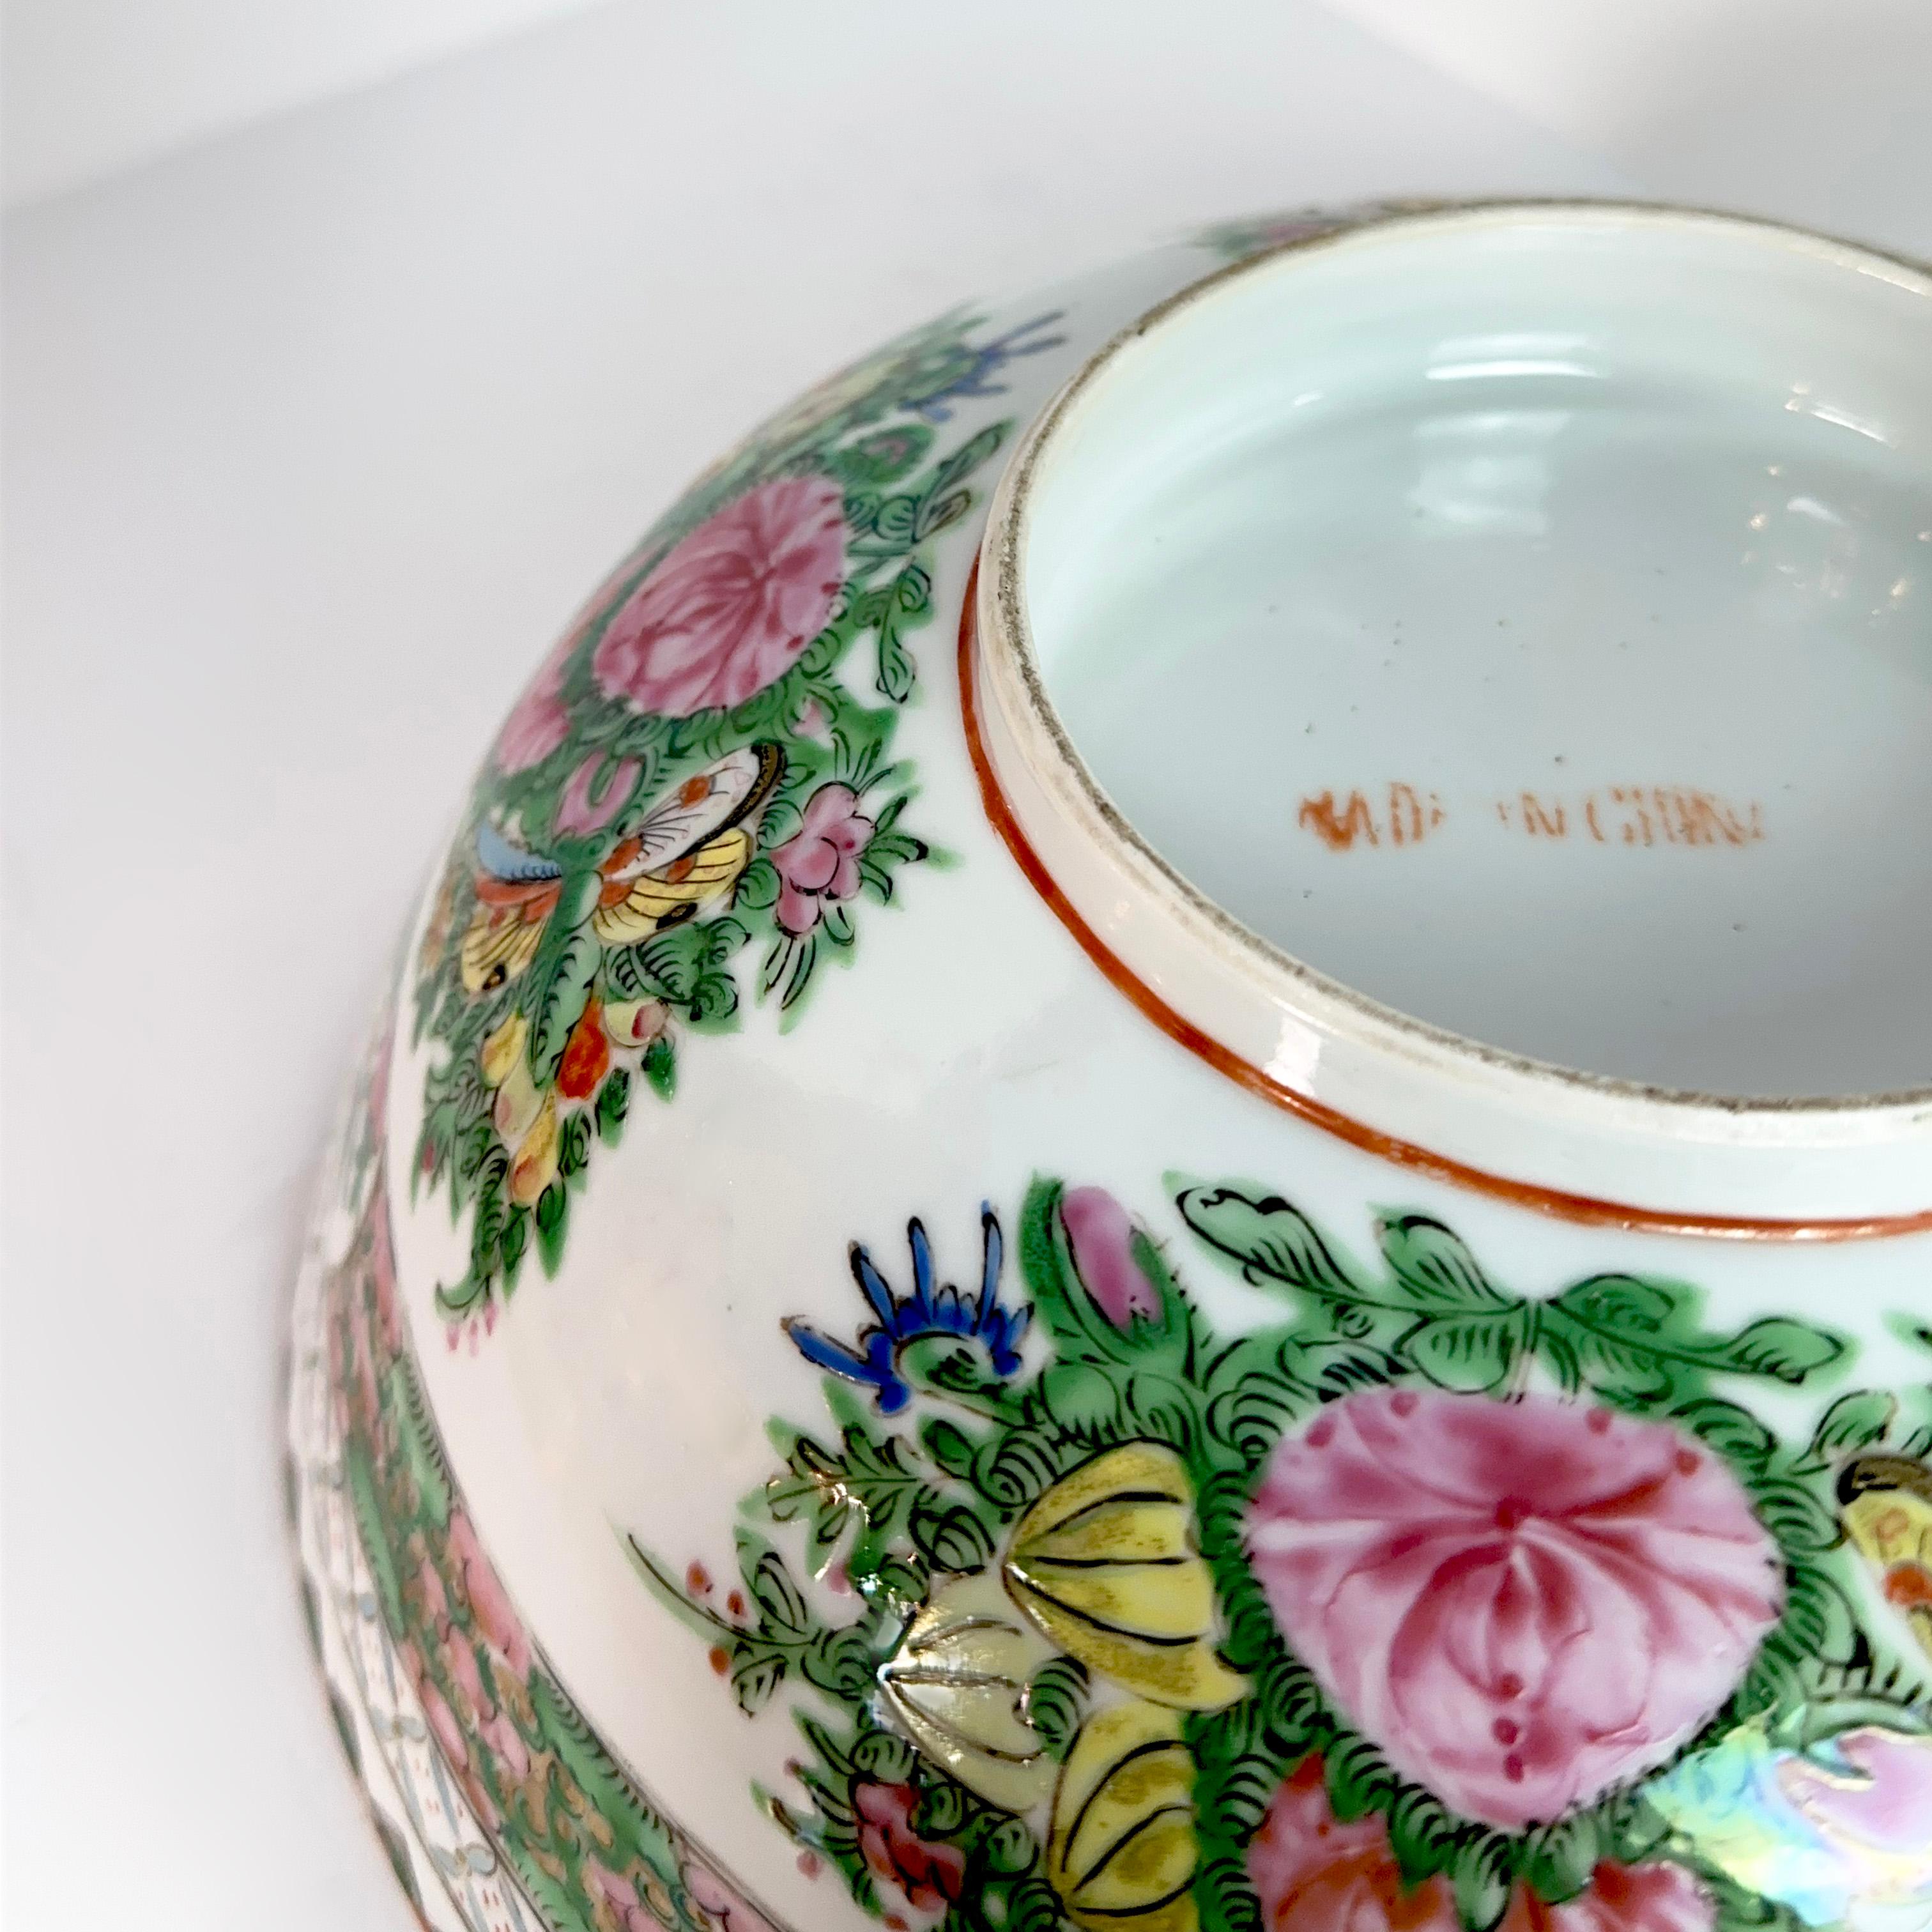 Dieses prächtige chinesische Porzellan im lebhaften Stil des Rosenmedaillons ist eine große Canton-Schale mit Rosenmedaillon, die Sie in den Bann der Geschichte ziehen wird. Die handgemalte Emailleoberfläche zeigt eine komplizierte Szene mit üppiger